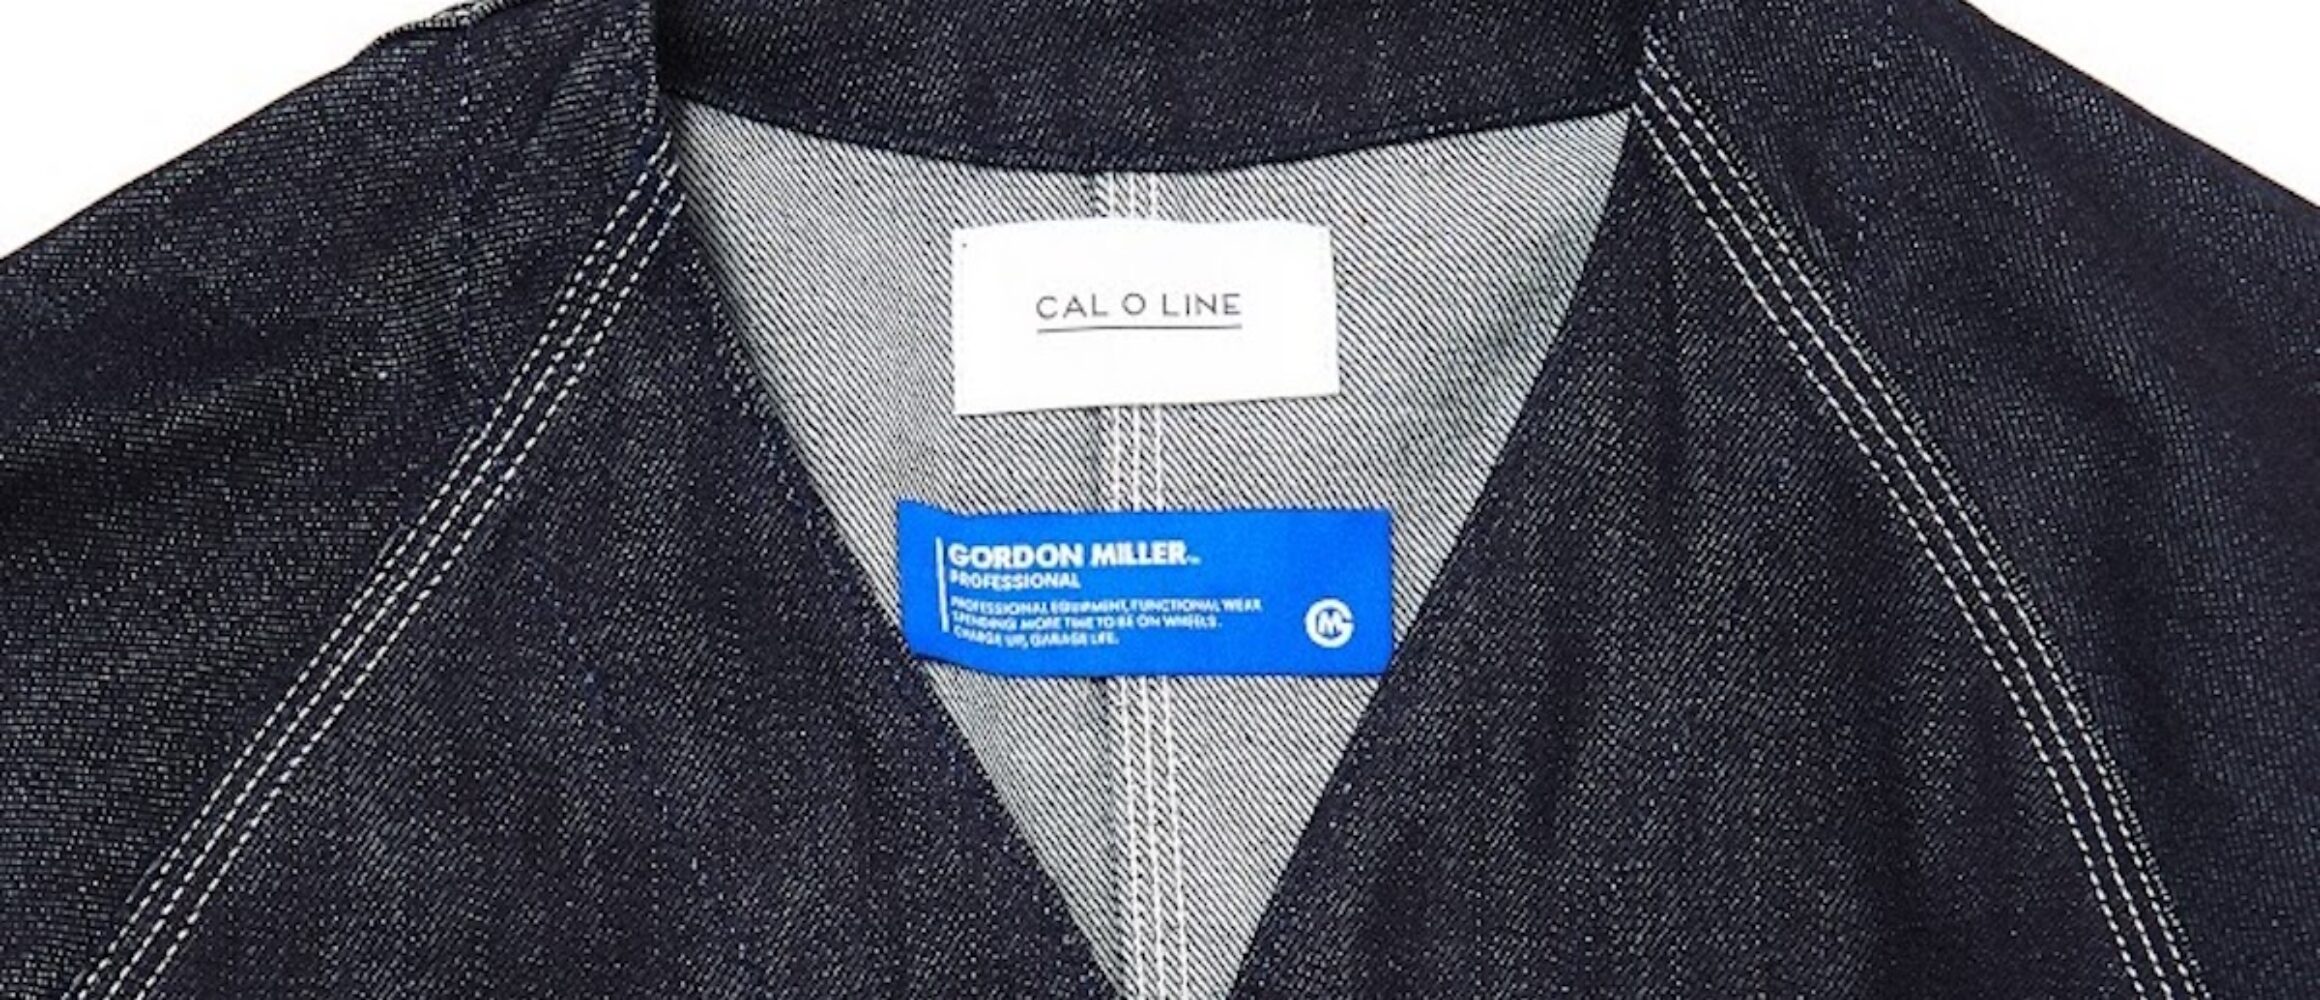 CAL O LINE × GORDON MILLERが、育て甲斐のあるリジッドデニム